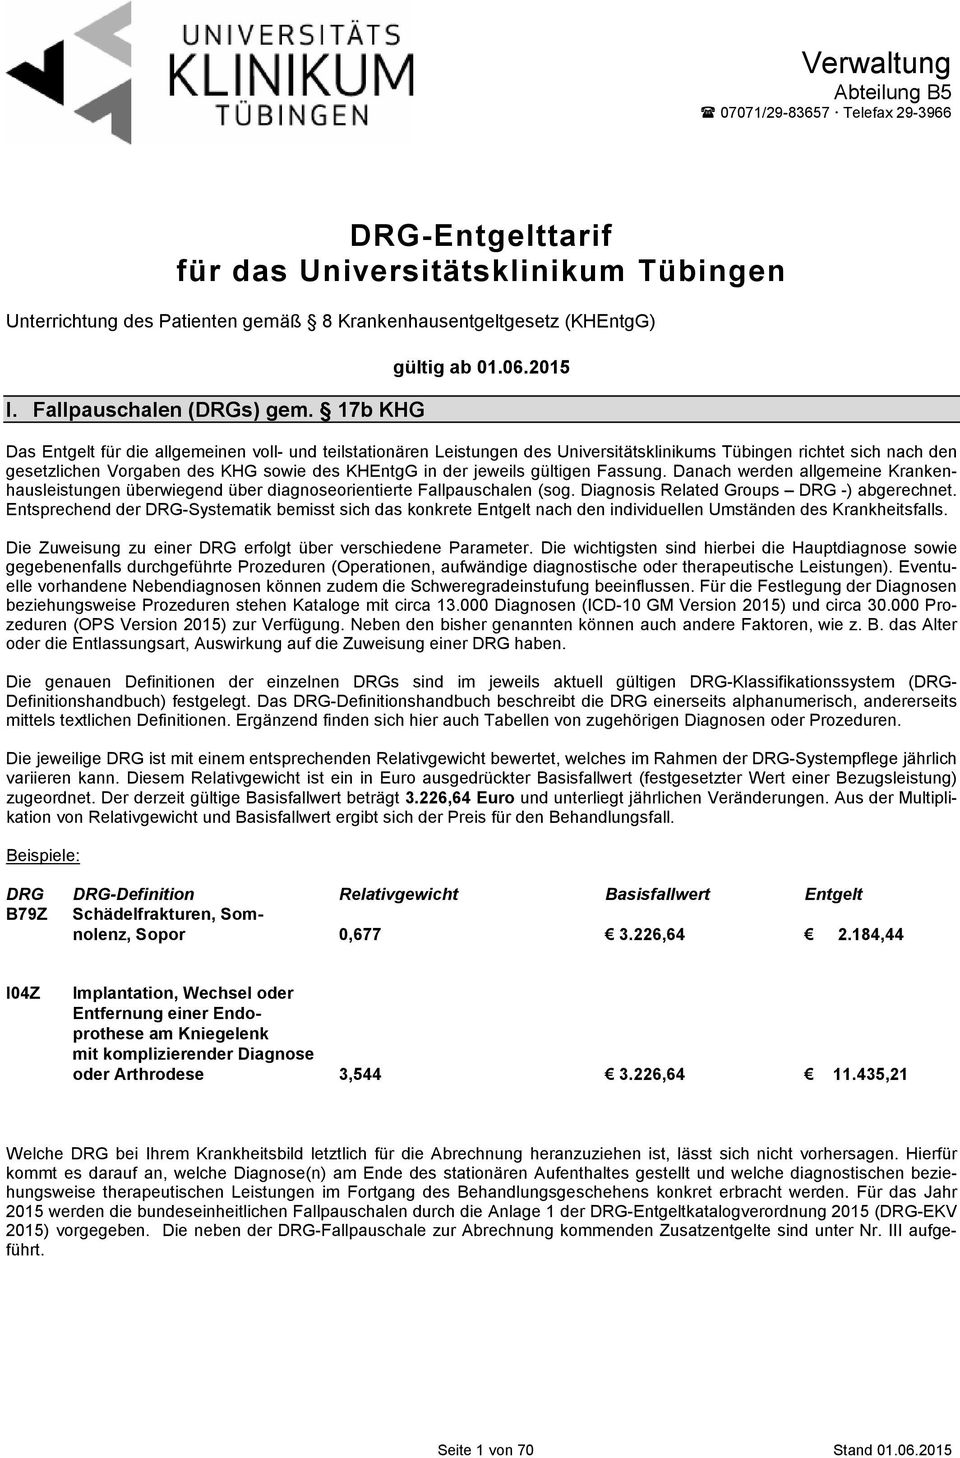 2015 Das Entgelt für die allgemeinen voll- und teilstationären Leistungen des Universitätsklinikums Tübingen richtet sich nach den gesetzlichen Vorgaben des KHG sowie des KHEntgG in der jeweils